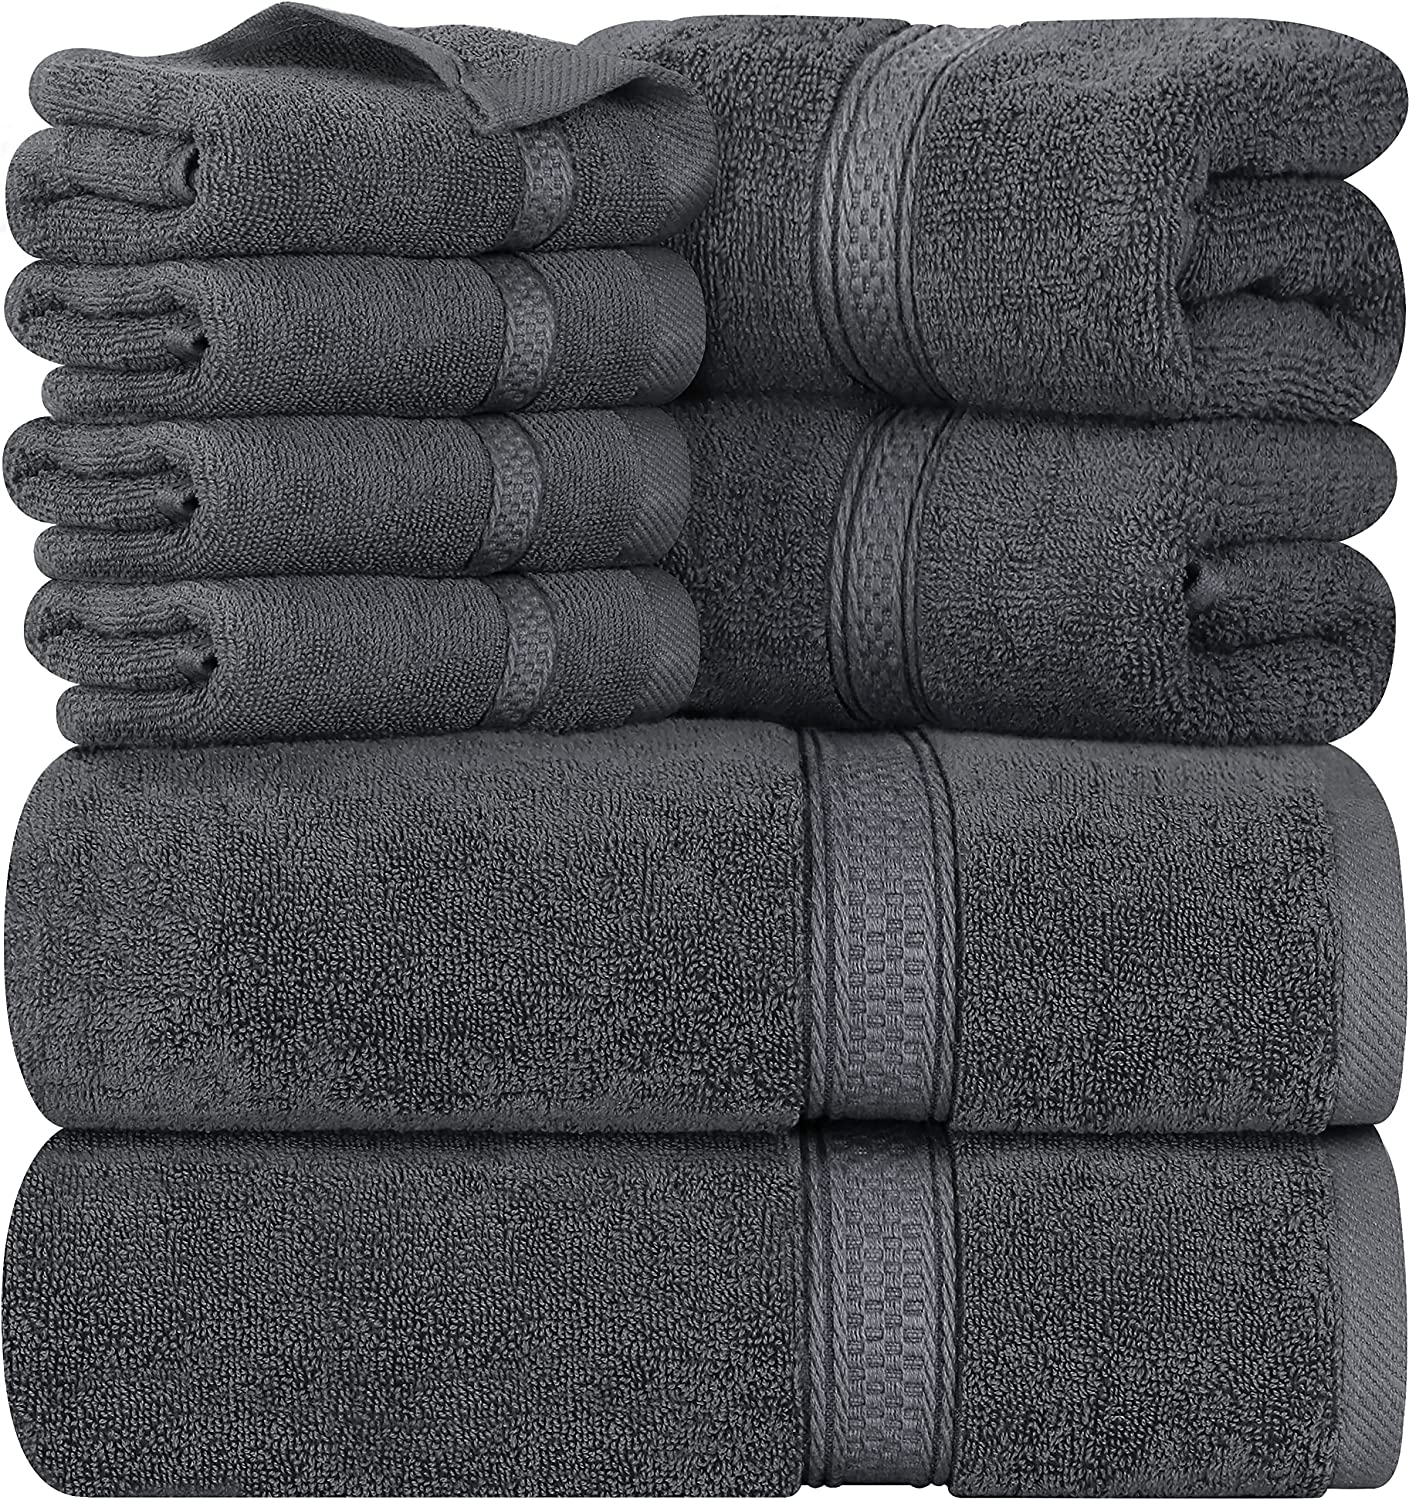 https://www.dontwasteyourmoney.com/wp-content/uploads/2019/10/utopia-towels-8-piece-towel-set-1.jpg